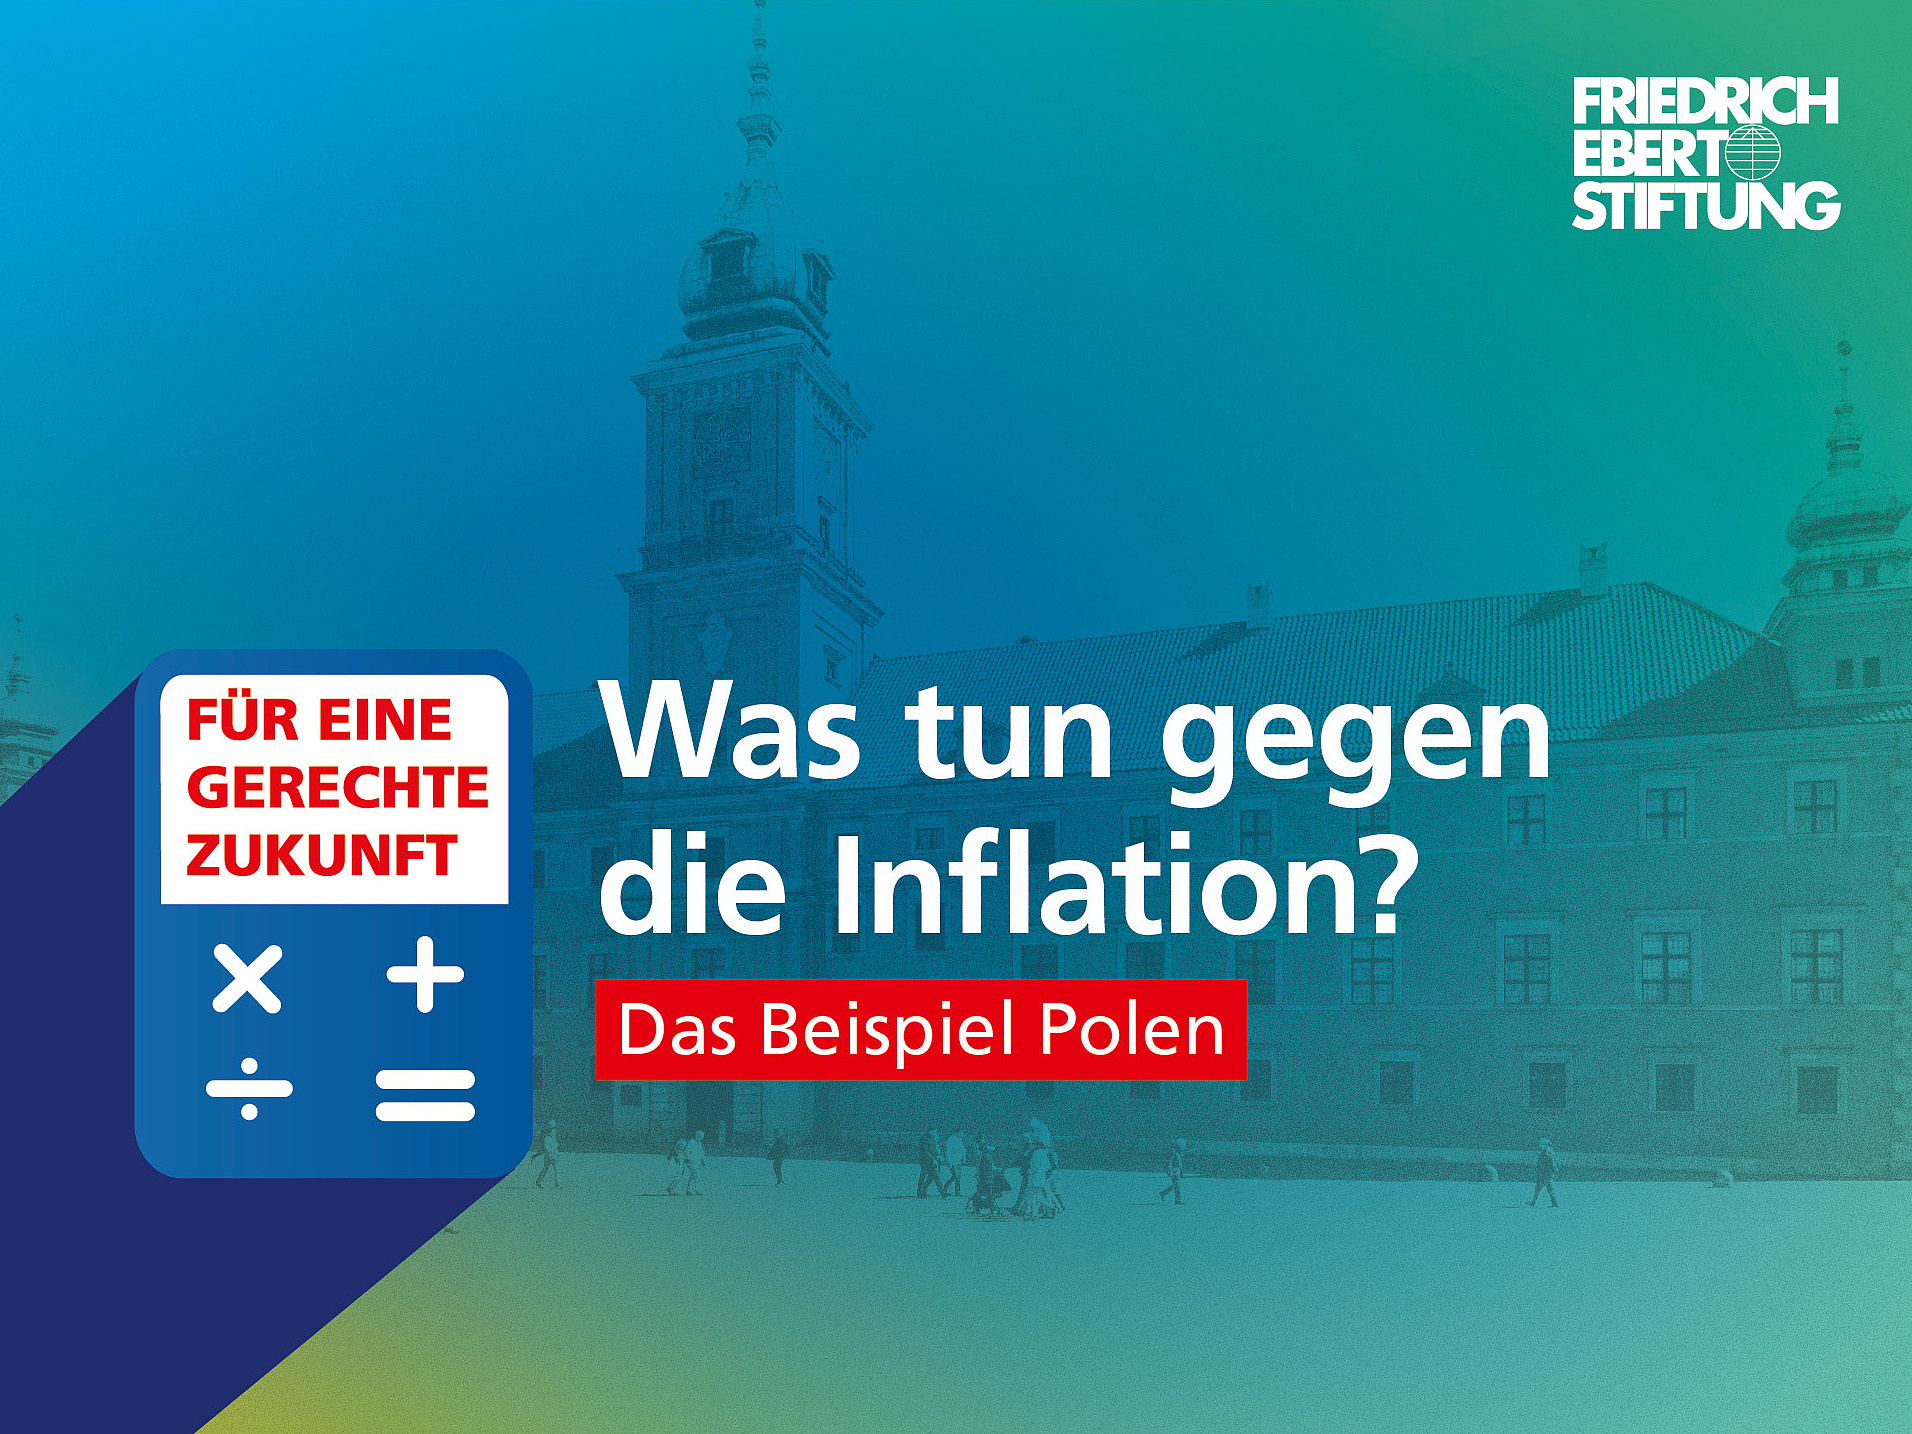 Blau-grün-gelb verwischter Hintergrund. Darauf der weiße Schriftzug "Was tun gegen die Inflation? Das Beispiel Polen".